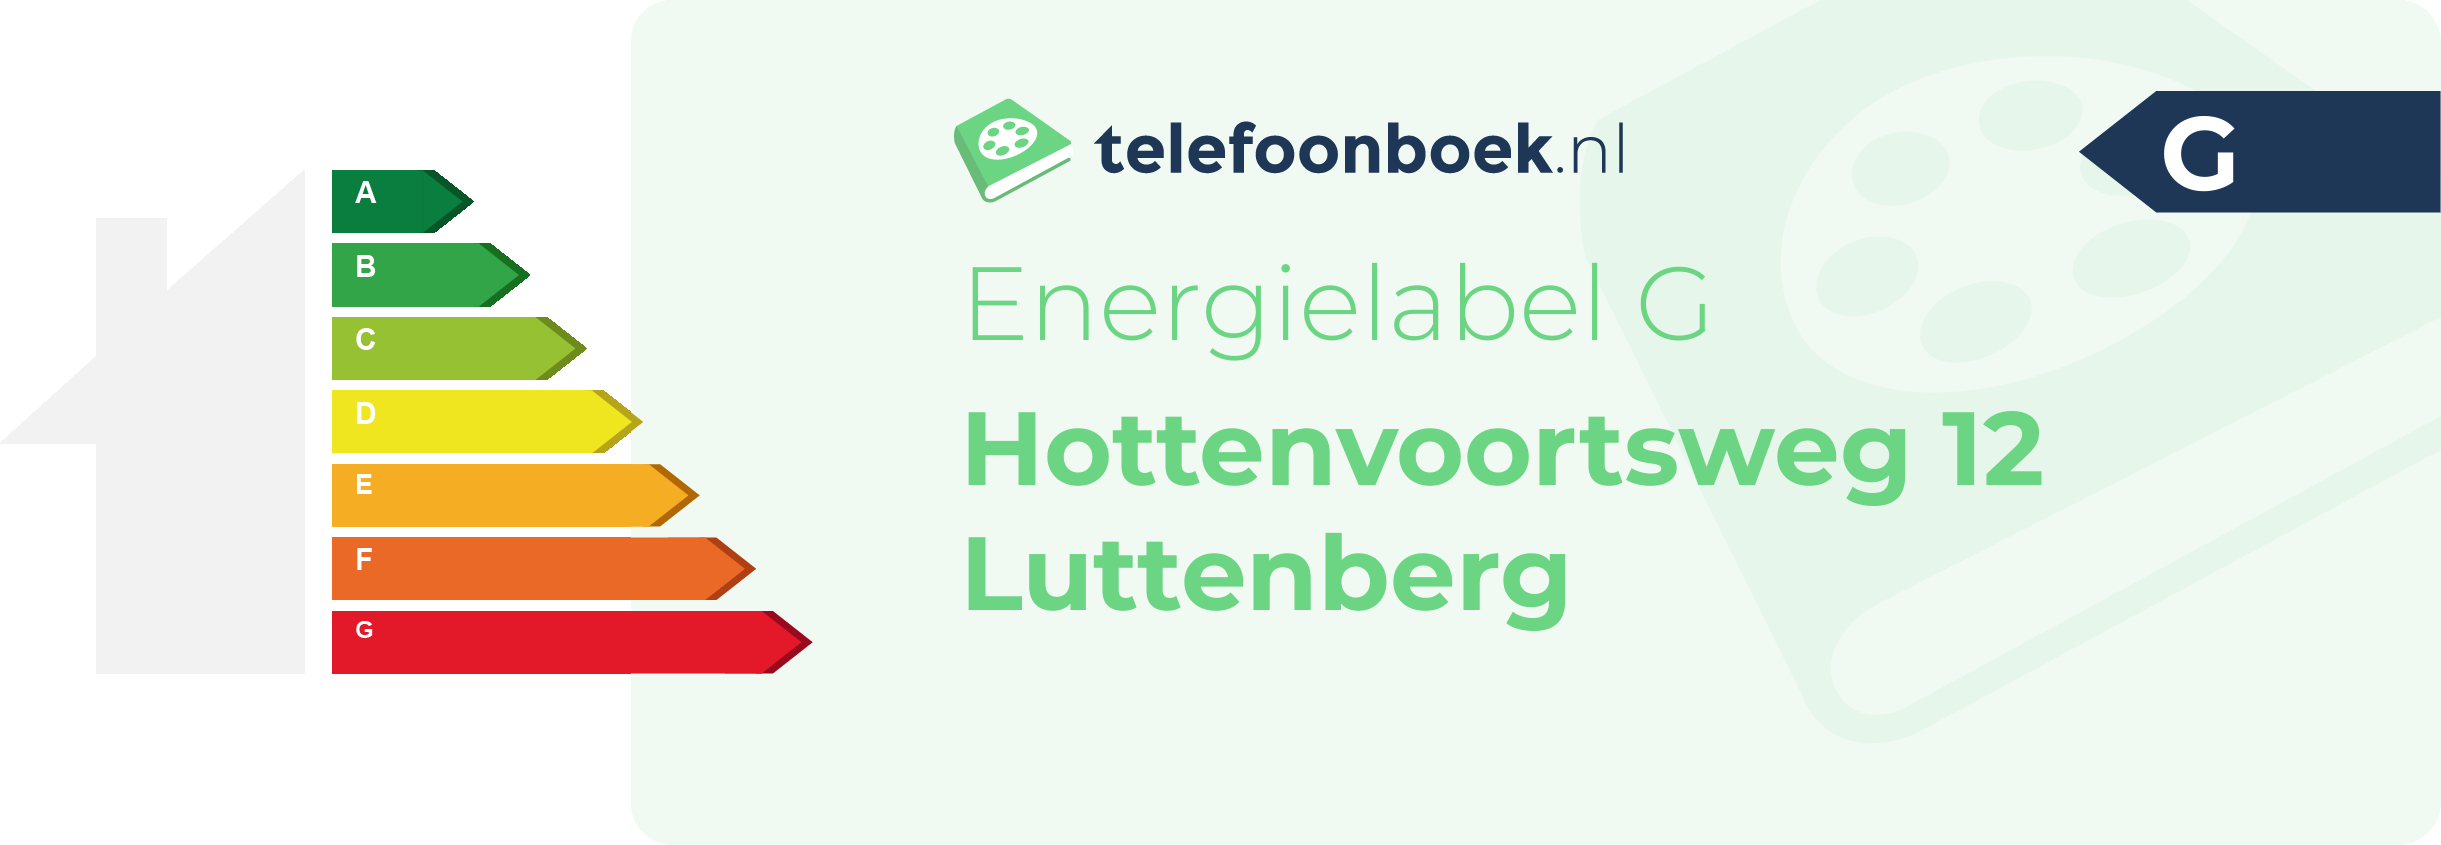 Energielabel Hottenvoortsweg 12 Luttenberg